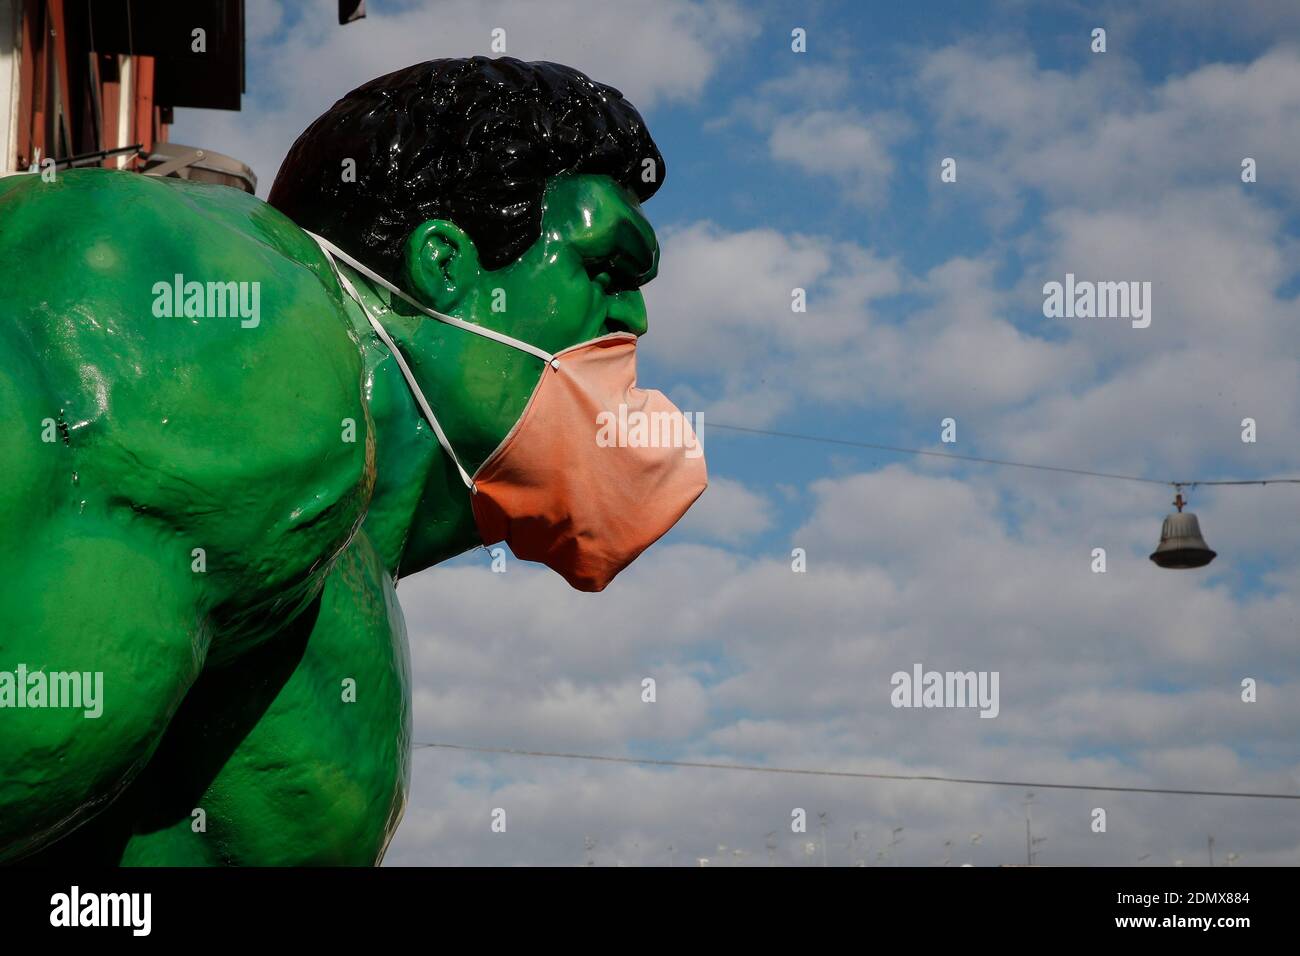 Naples, Italie. 17 décembre 2020. Une figure du personnage de Marvel Comics  Hulk portant un masque de protection se tient devant un magasin de jouets  dans la ville de Naples crédit: Agence